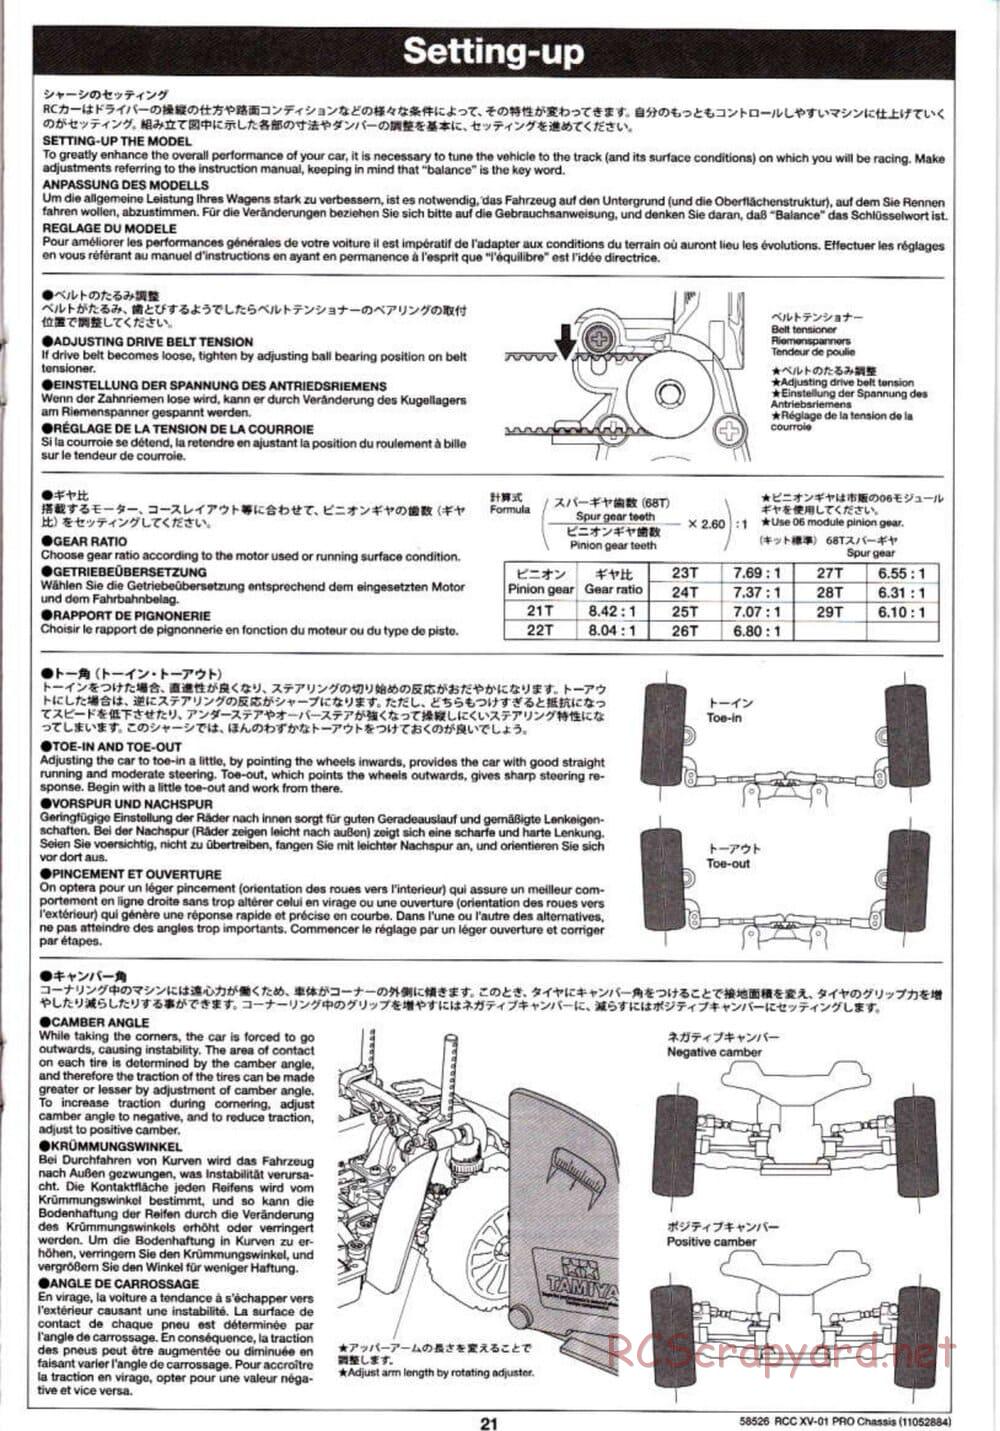 Tamiya - XV-01 PRO Chassis - Manual - Page 21